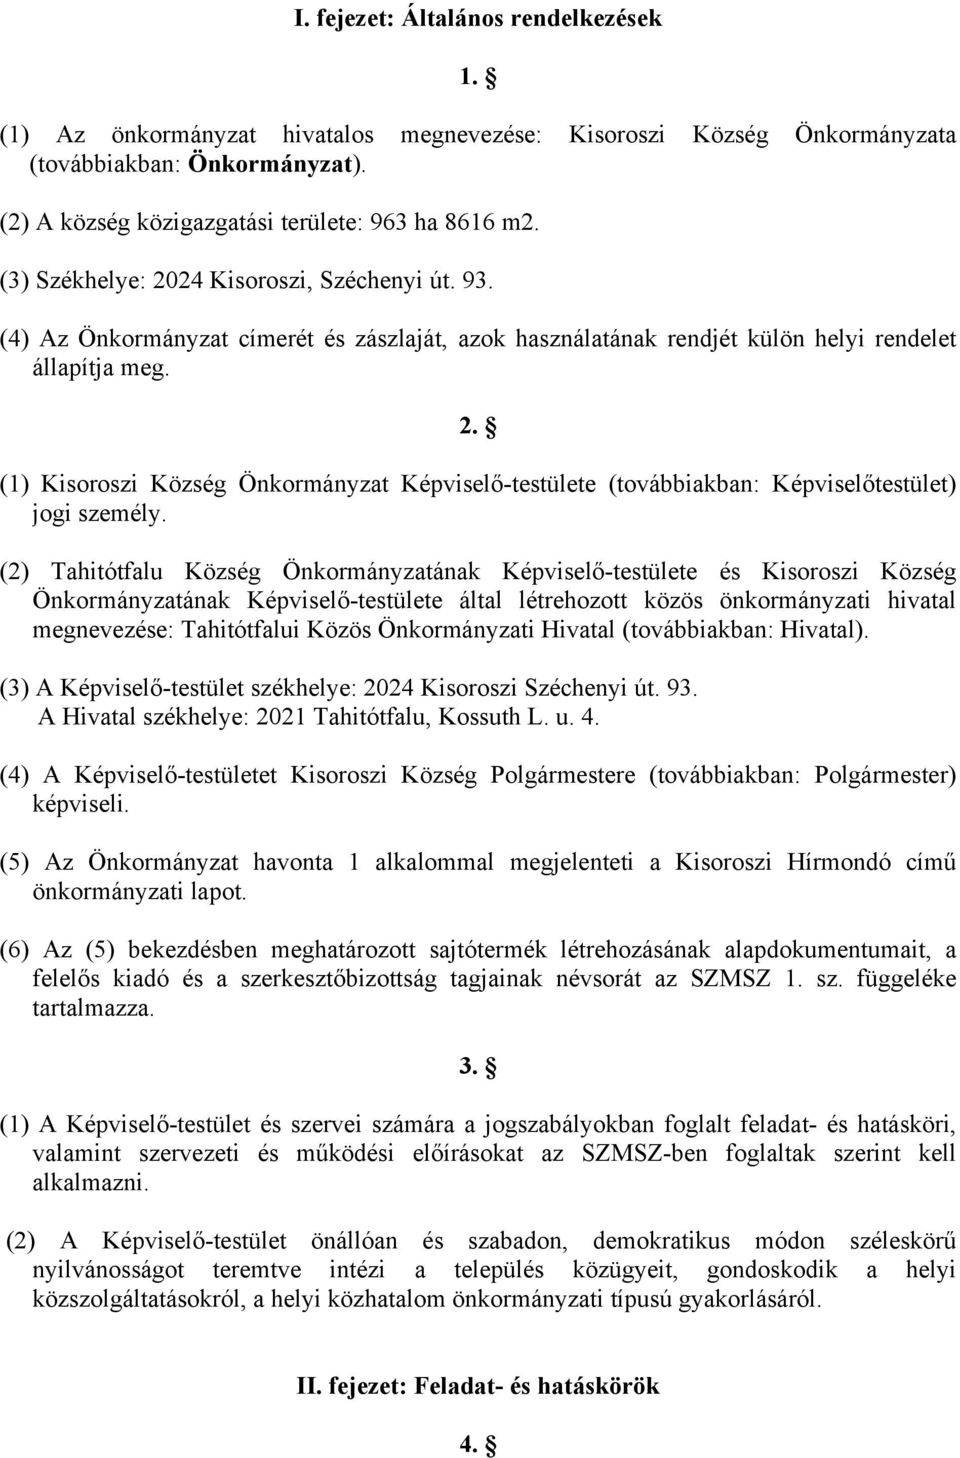 (2) Tahitótfalu Község Önkormányzatának Képviselő-testülete és Kisoroszi Község Önkormányzatának Képviselő-testülete által létrehozott közös önkormányzati hivatal megnevezése: Tahitótfalui Közös